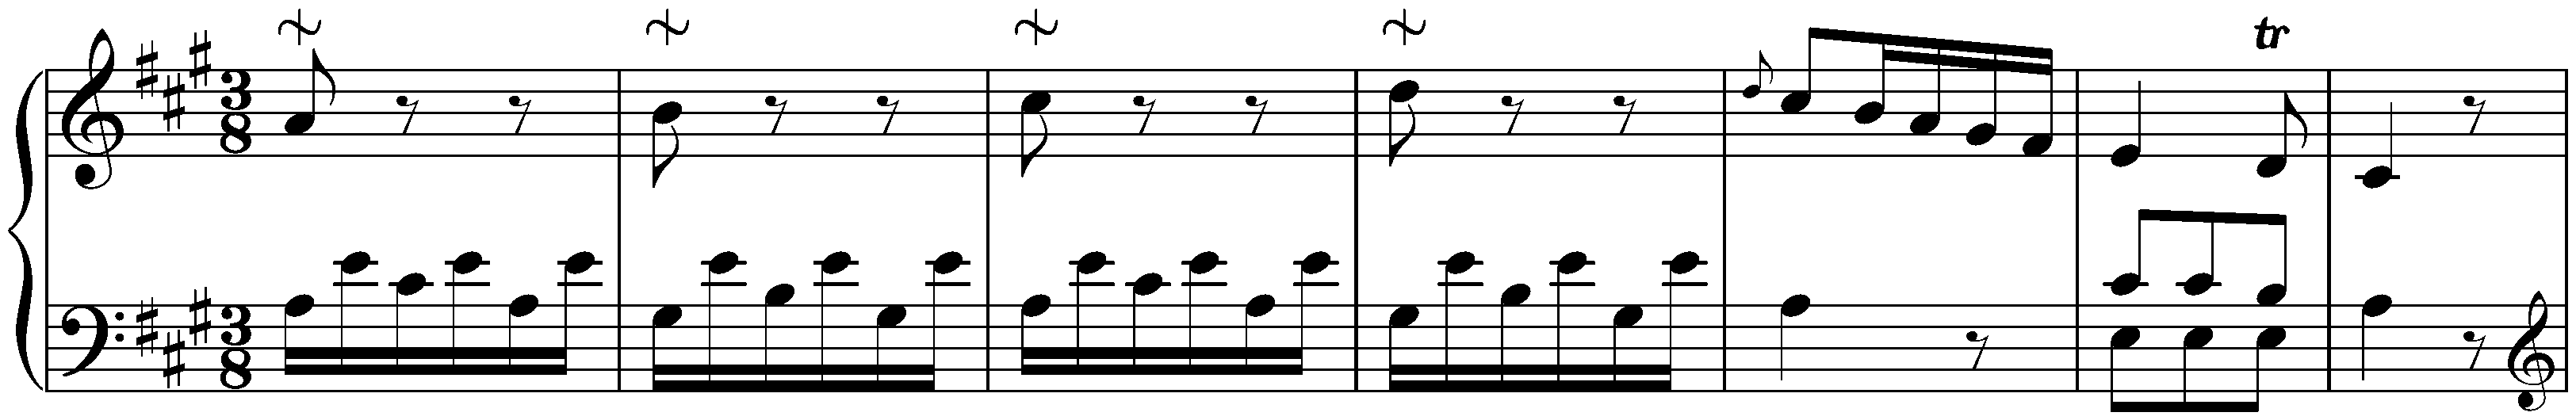 Sonata in A major, Hob. XVI:12; 3. Finale